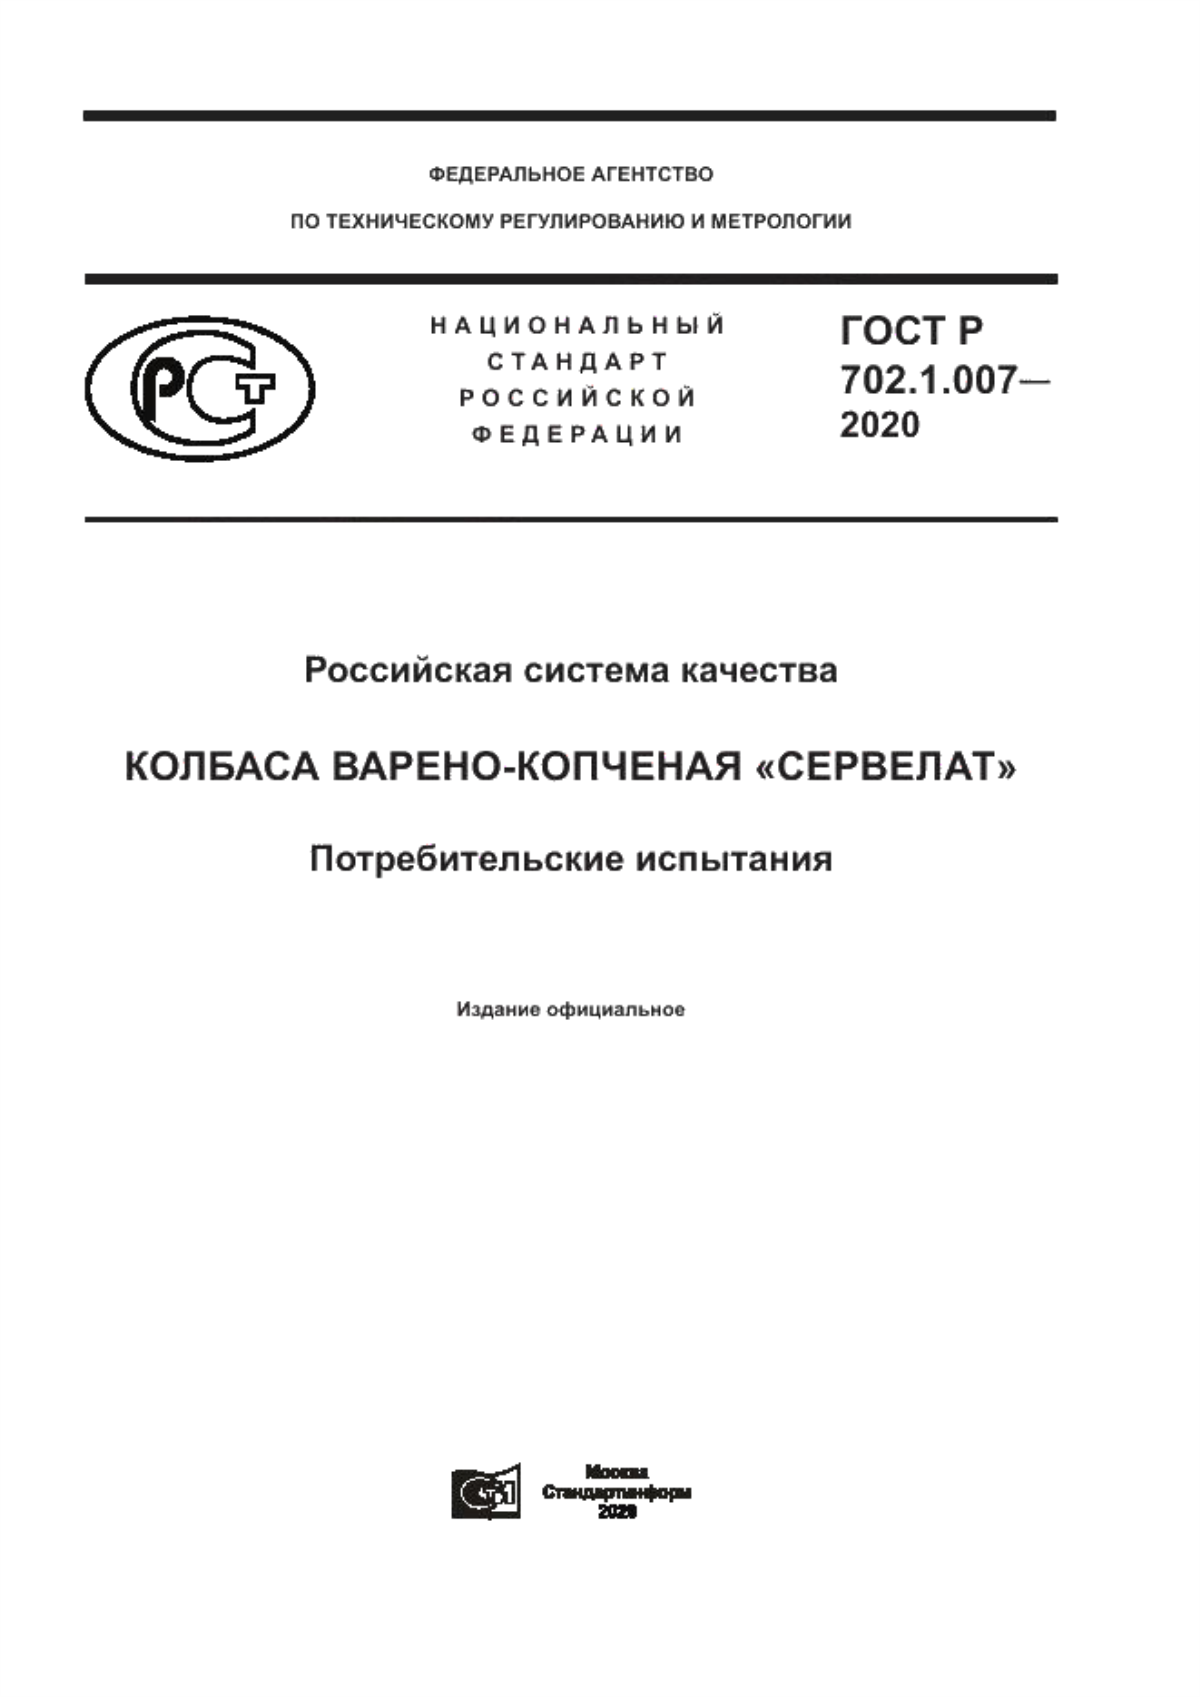 ГОСТ Р 702.1.007-2020 Российская система качества. Колбаса варено-копченая «Сервелат». Потребительские испытания